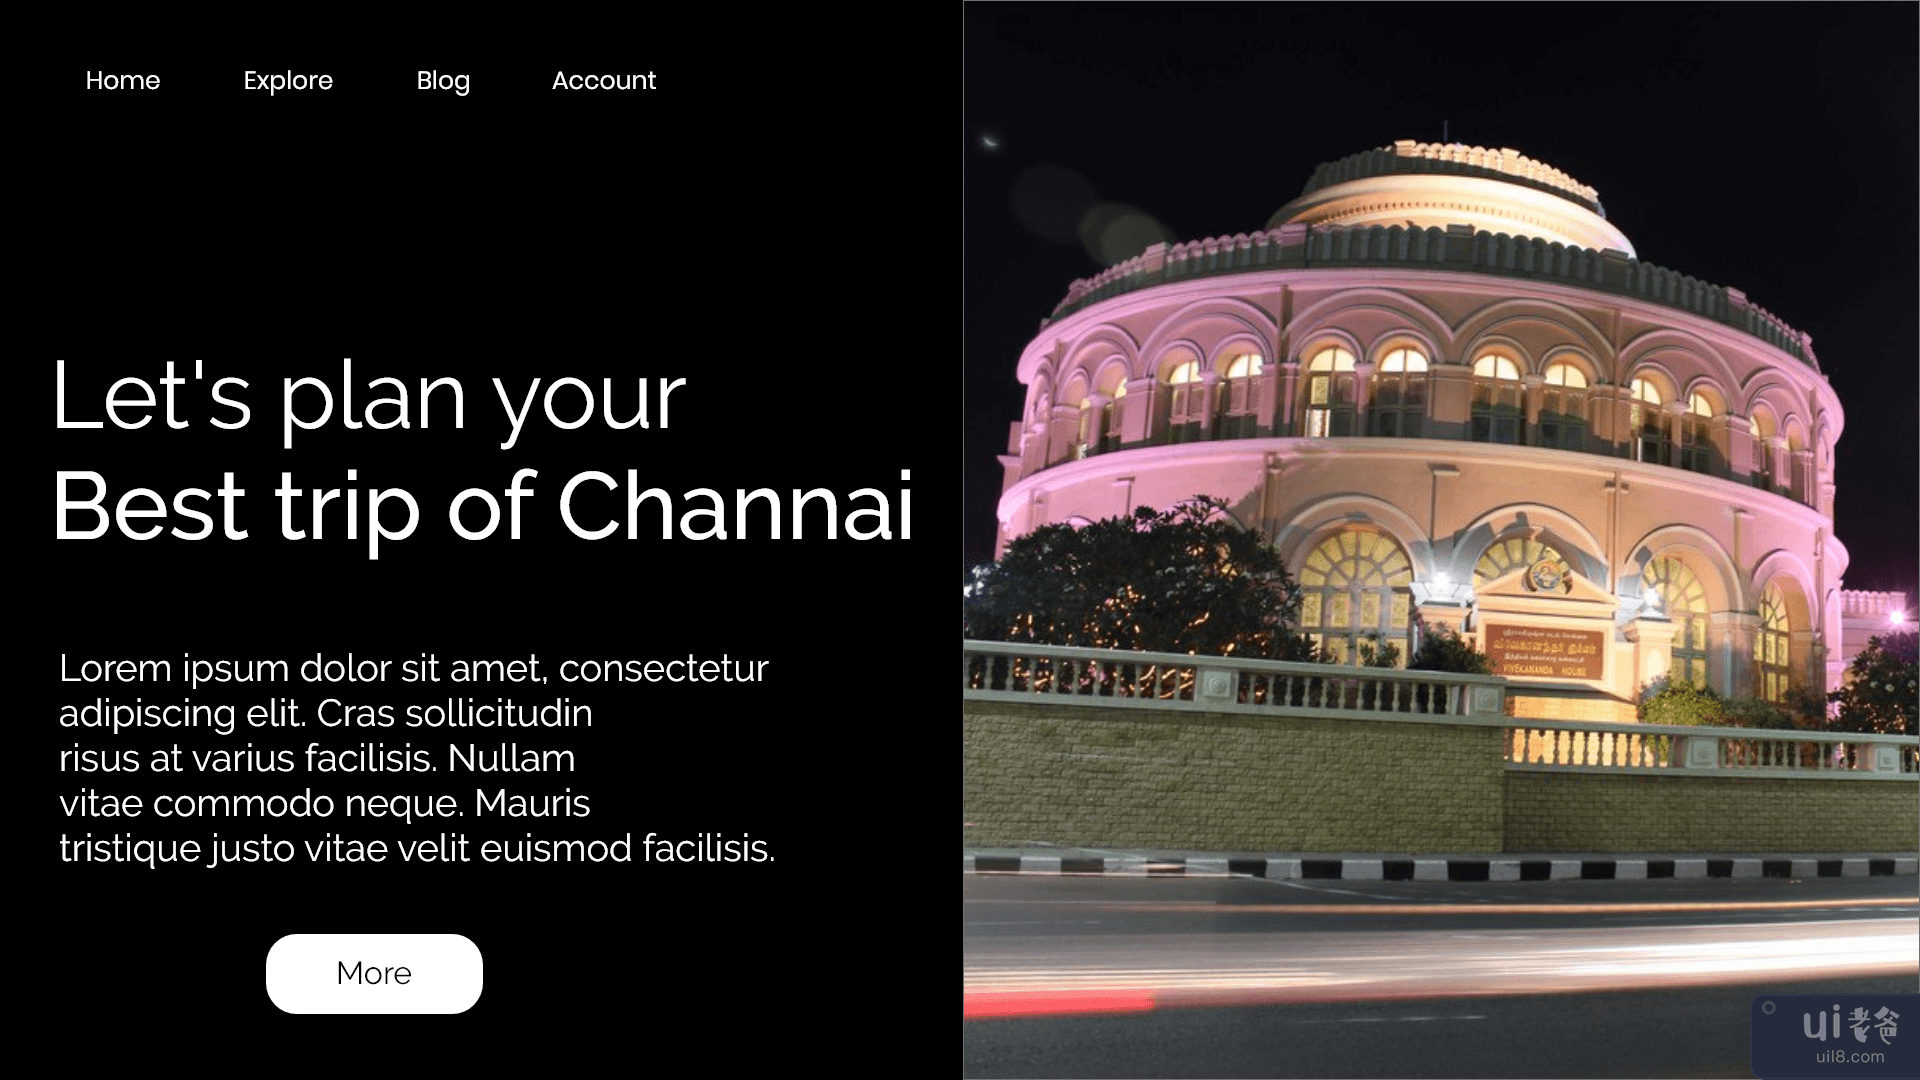 钦奈网页登陆页面(Chennai Web Landing Page)插图